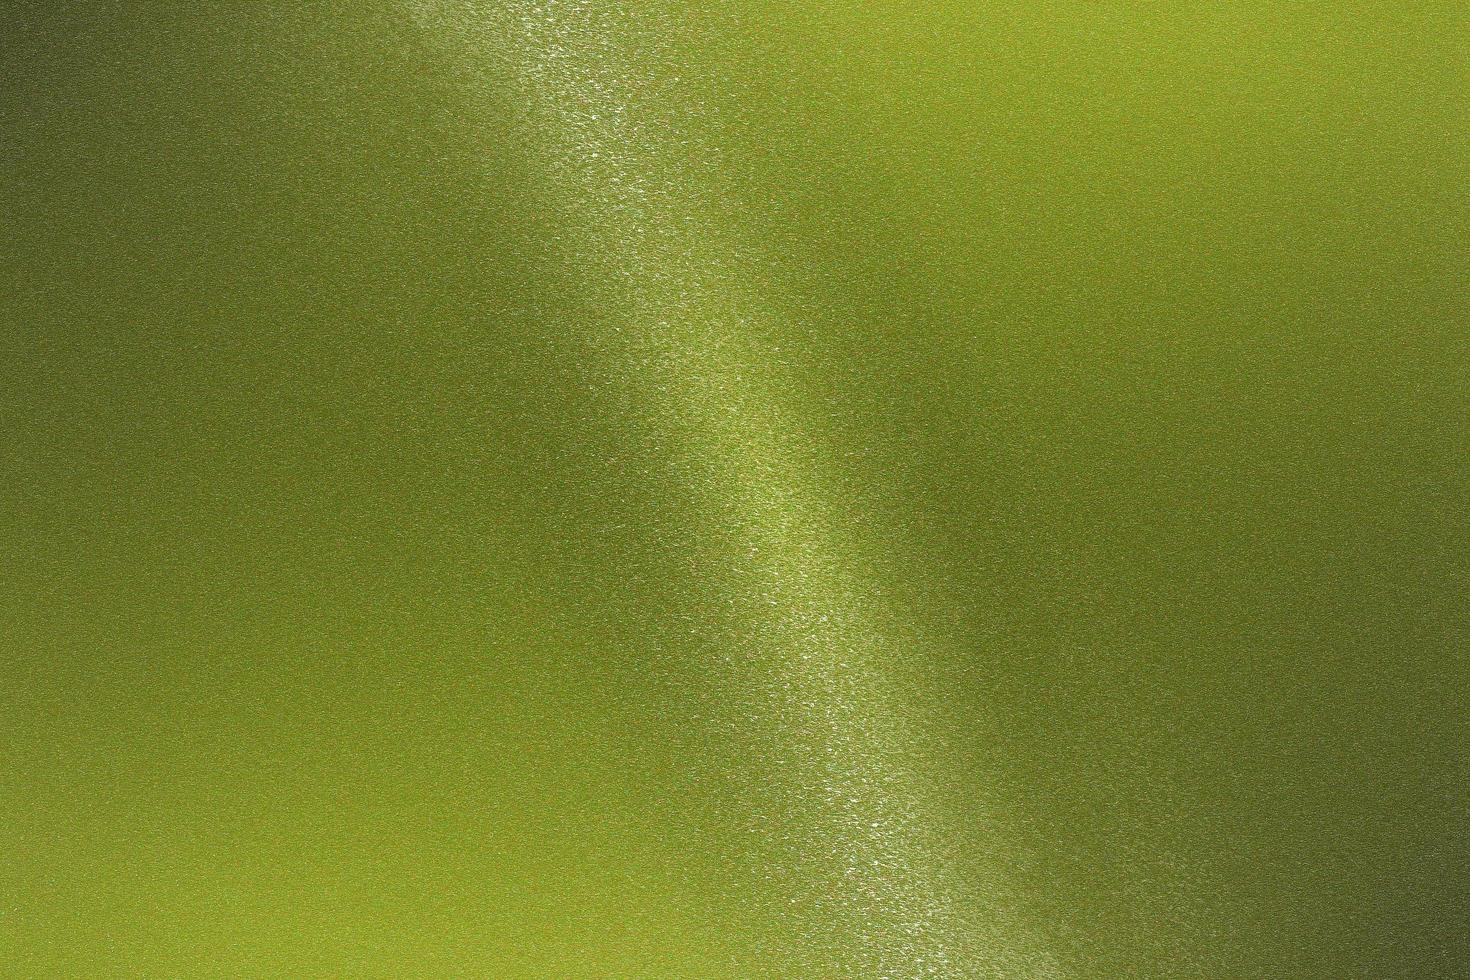 parede metálica verde clara brilhante com espaço de cópia, fundo de textura de papel de parede foto